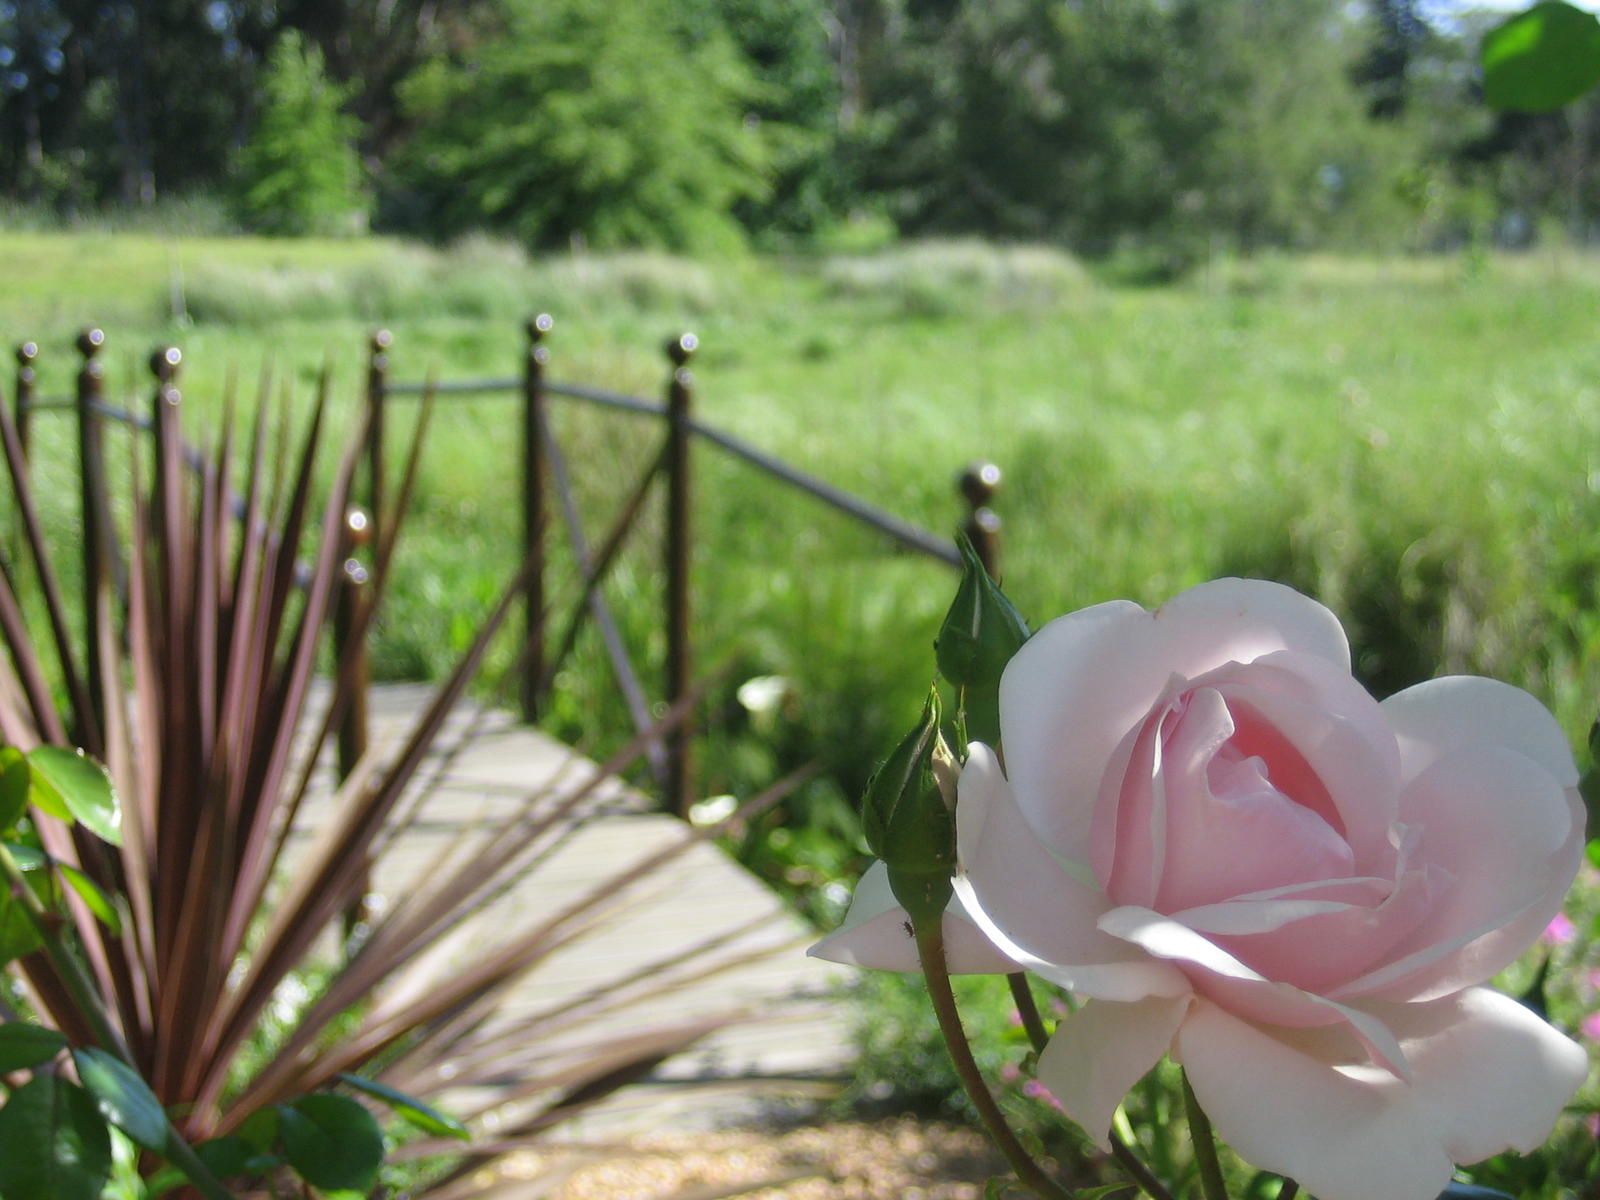 Acara Stellenbosch Western Cape South Africa Meadow, Nature, Plant, Rose, Flower, Garden